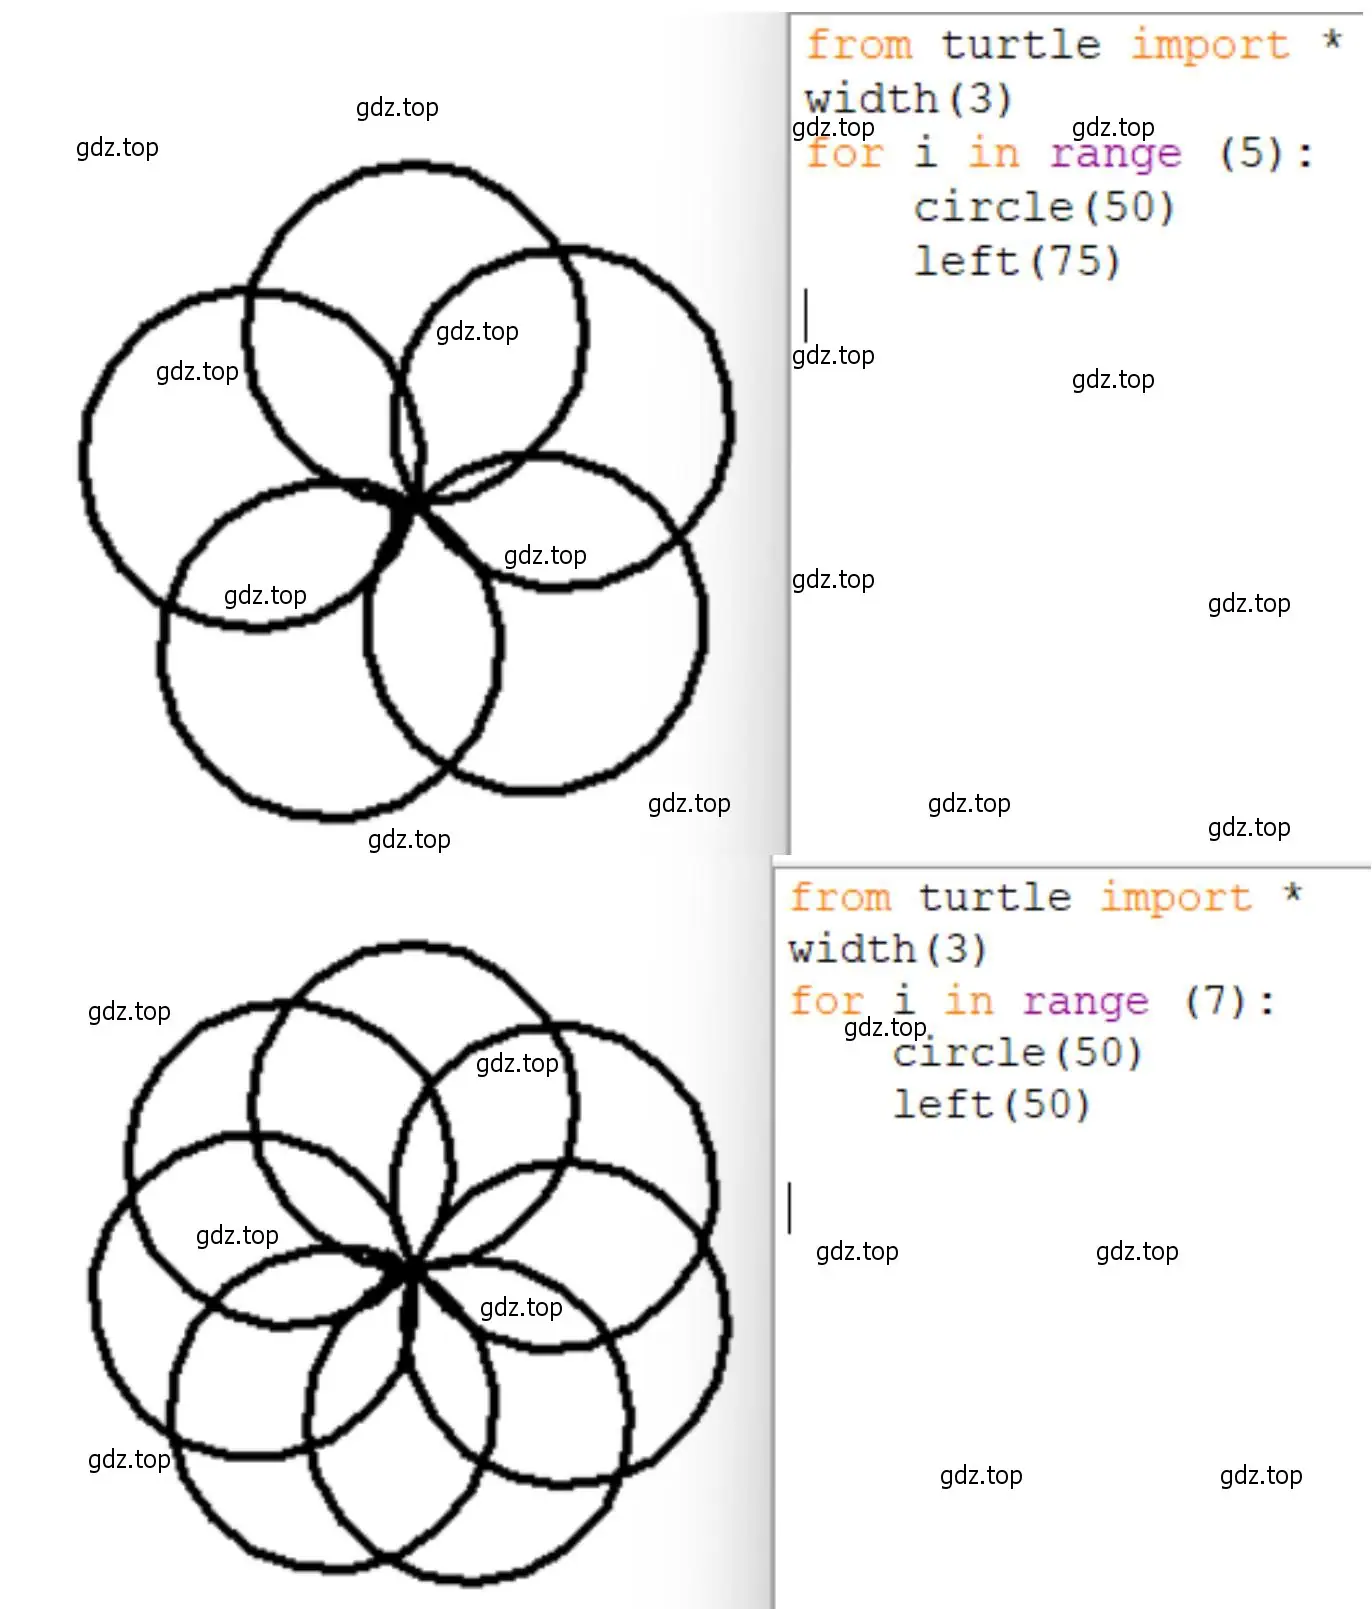 Разработать программу для построения в центре графического окна одного из изображений цветка